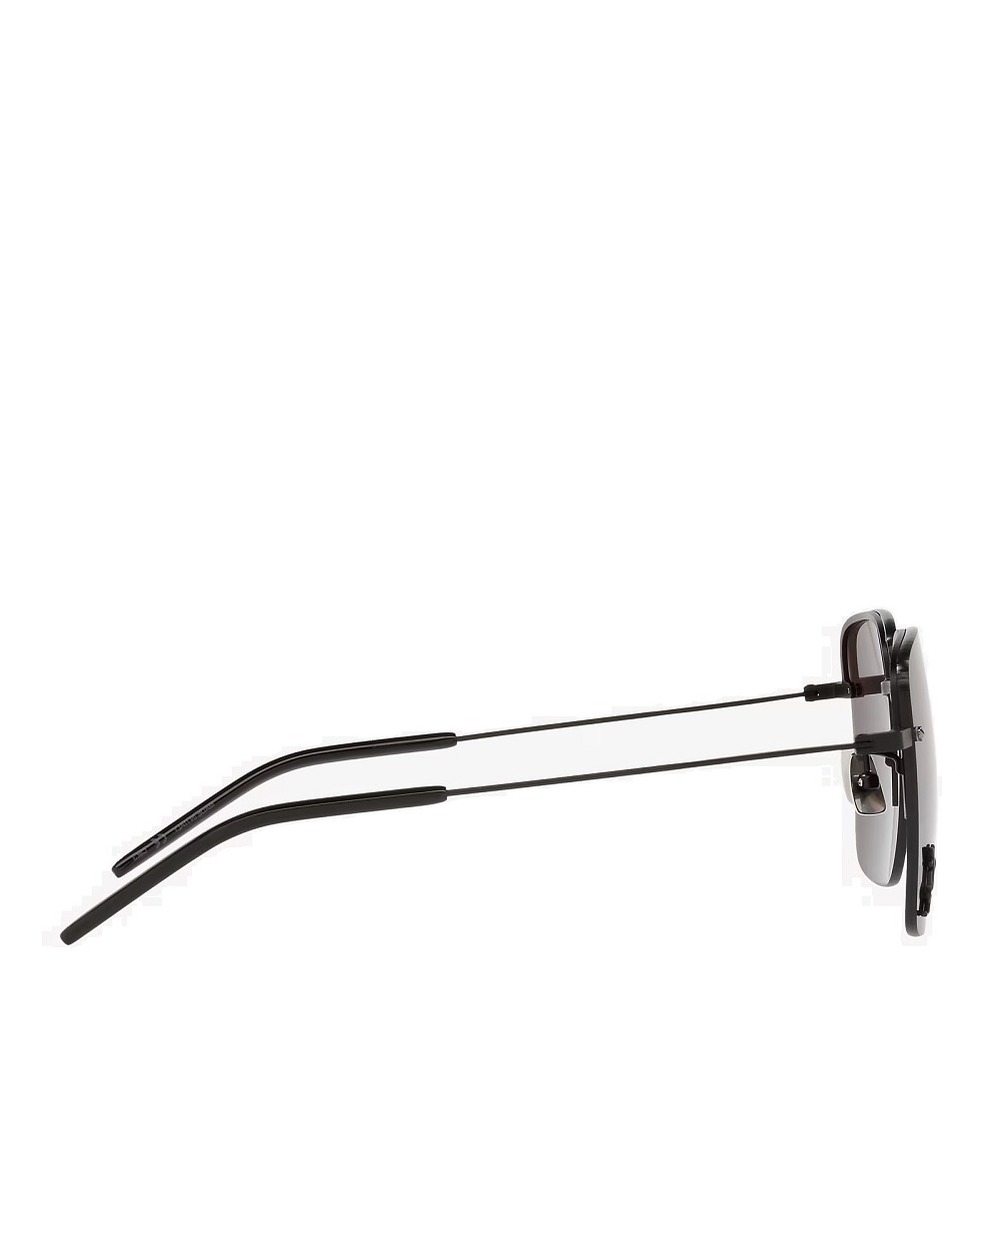 Солнцезащитные очки Saint Laurent SL 312 M-001, черный цвет • Купить в интернет-магазине Kameron